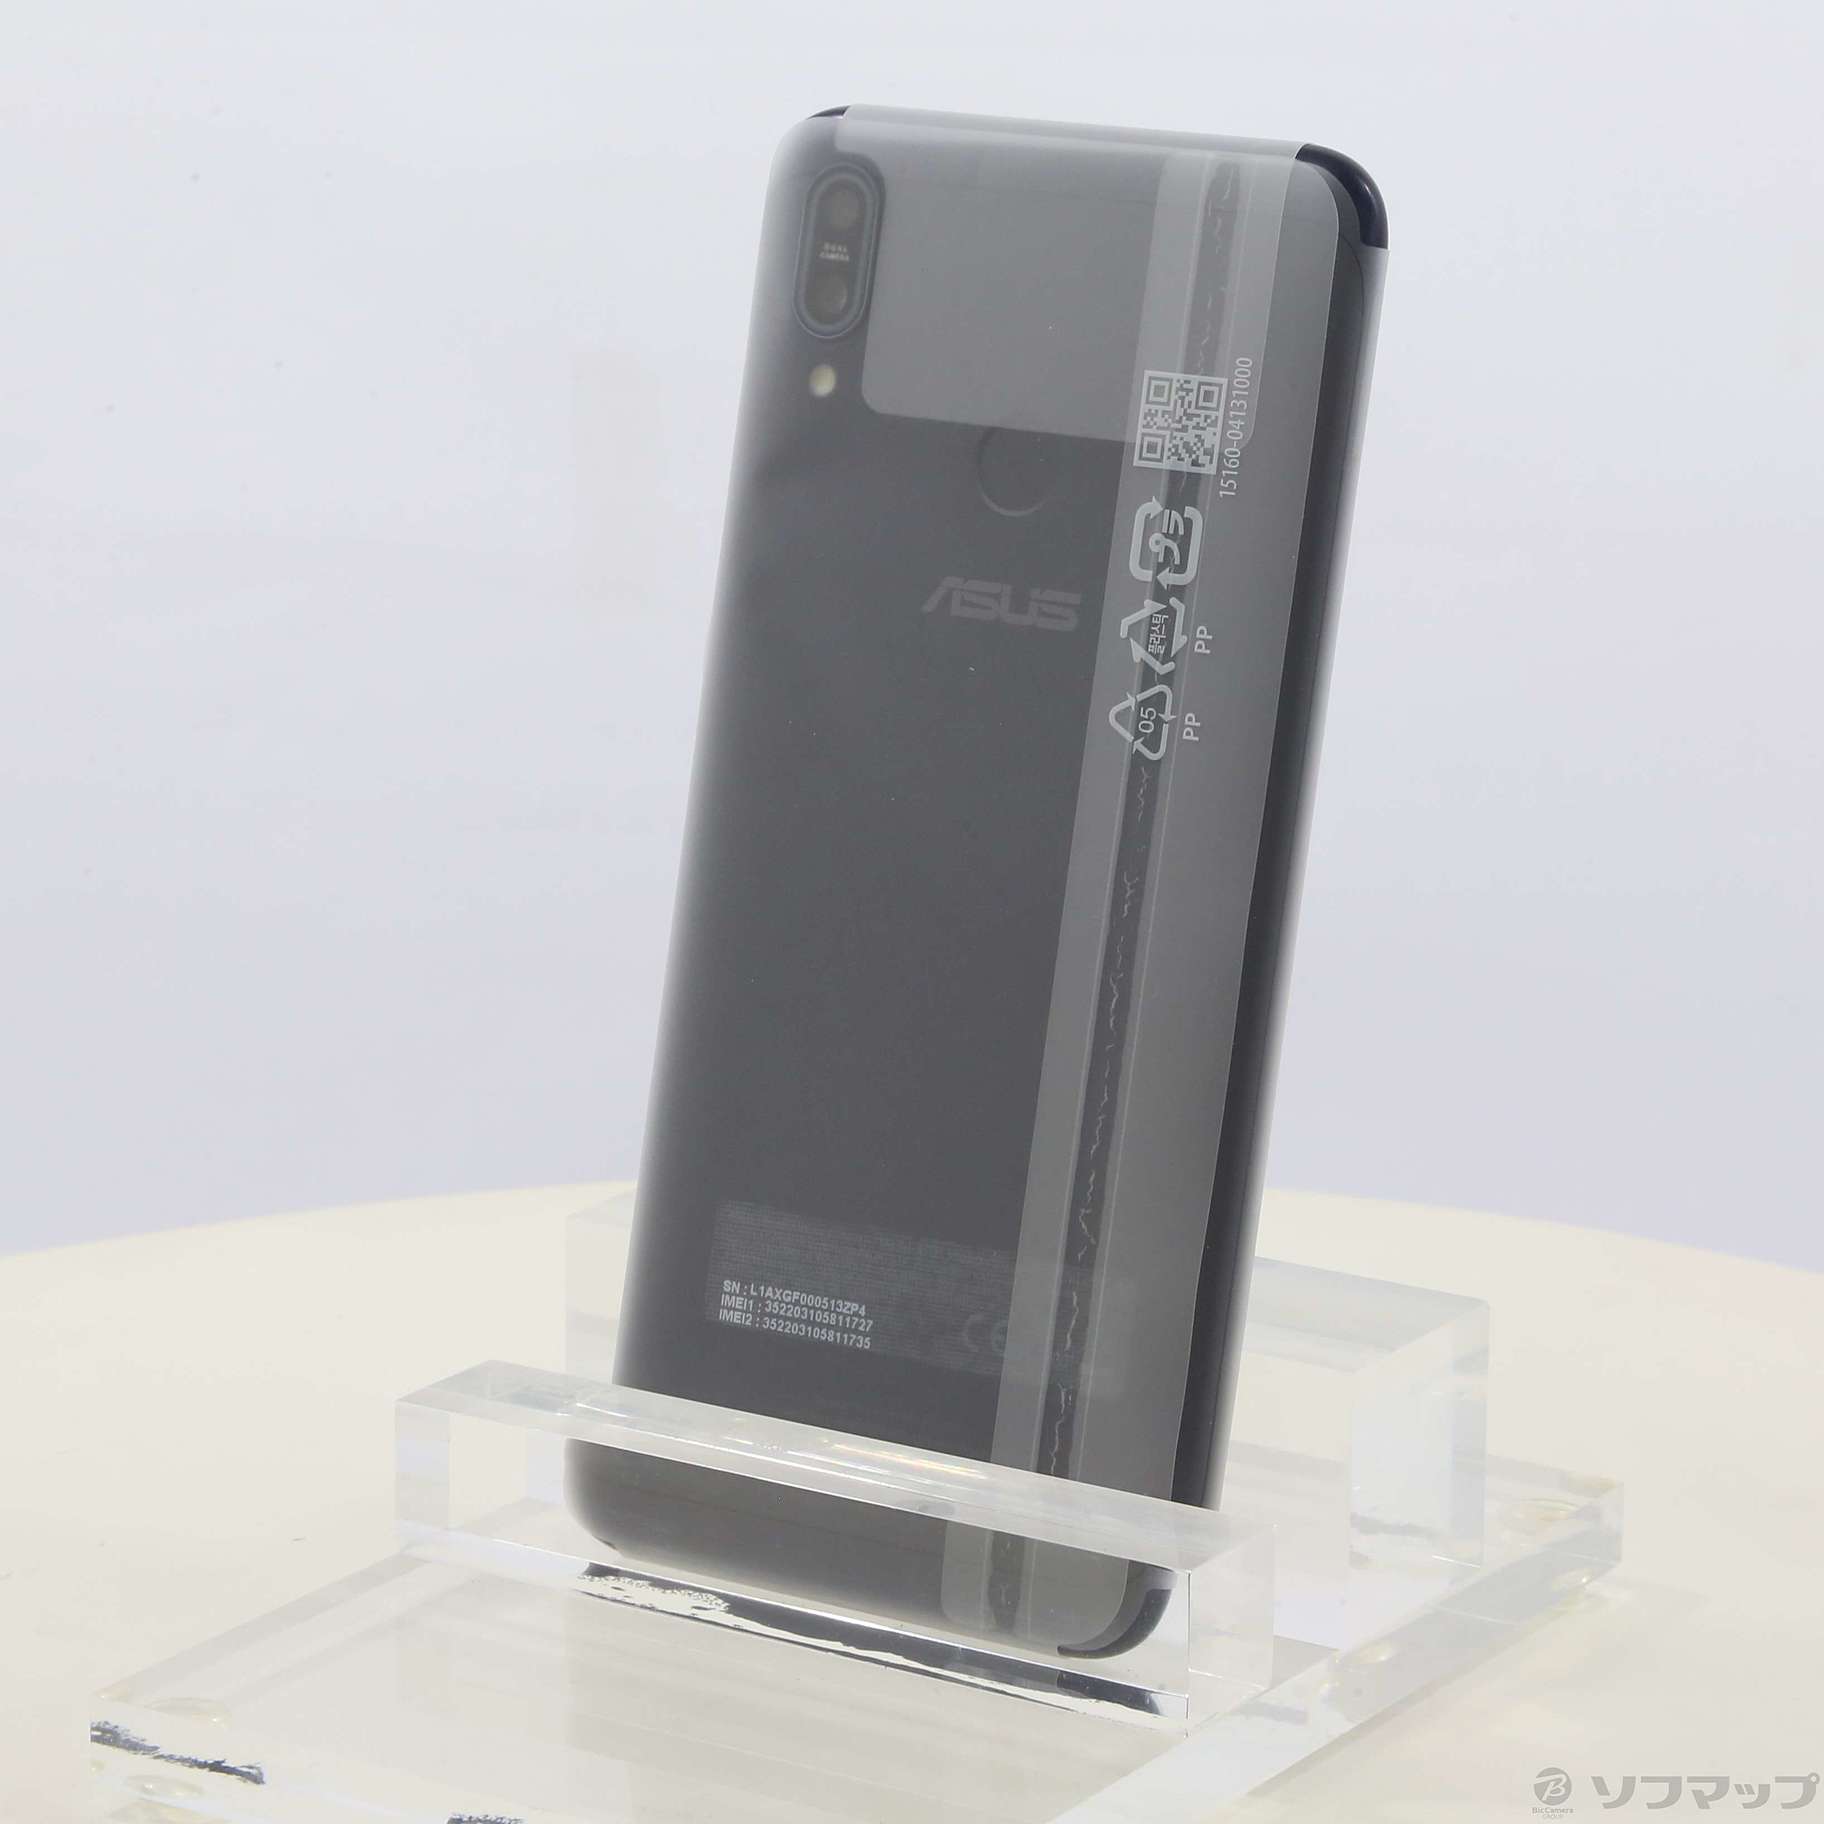 セール対象品 ZenFone Max M2 64GB ミッドナイトブラック ZB633KL-BK64S4 SIMフリー